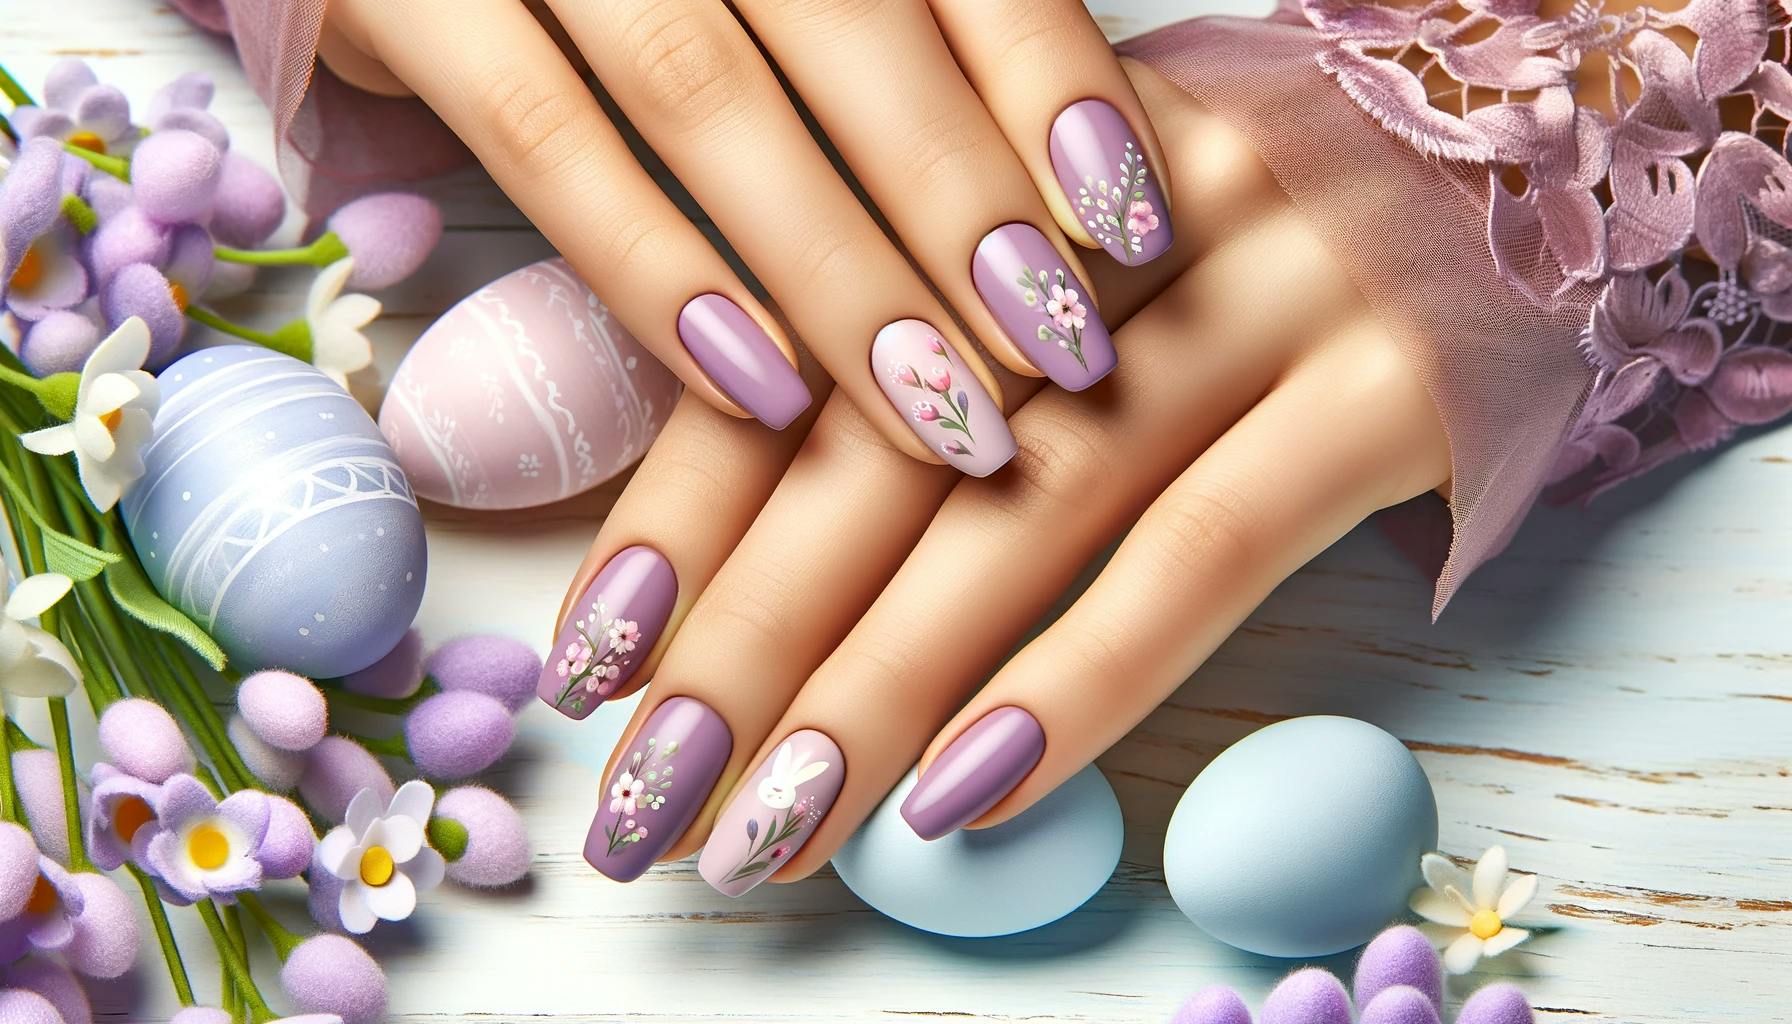 Delikatne fioletowe paznokcie na święta wielkanocne z subtelnie wplecionymi motywami wiosennymi, takimi jak male kwiaty i pastelowe jajka, na tle kwitnących kwiatów i pastelowych barw, idealne dla świątecznego i wiosennego nastroju